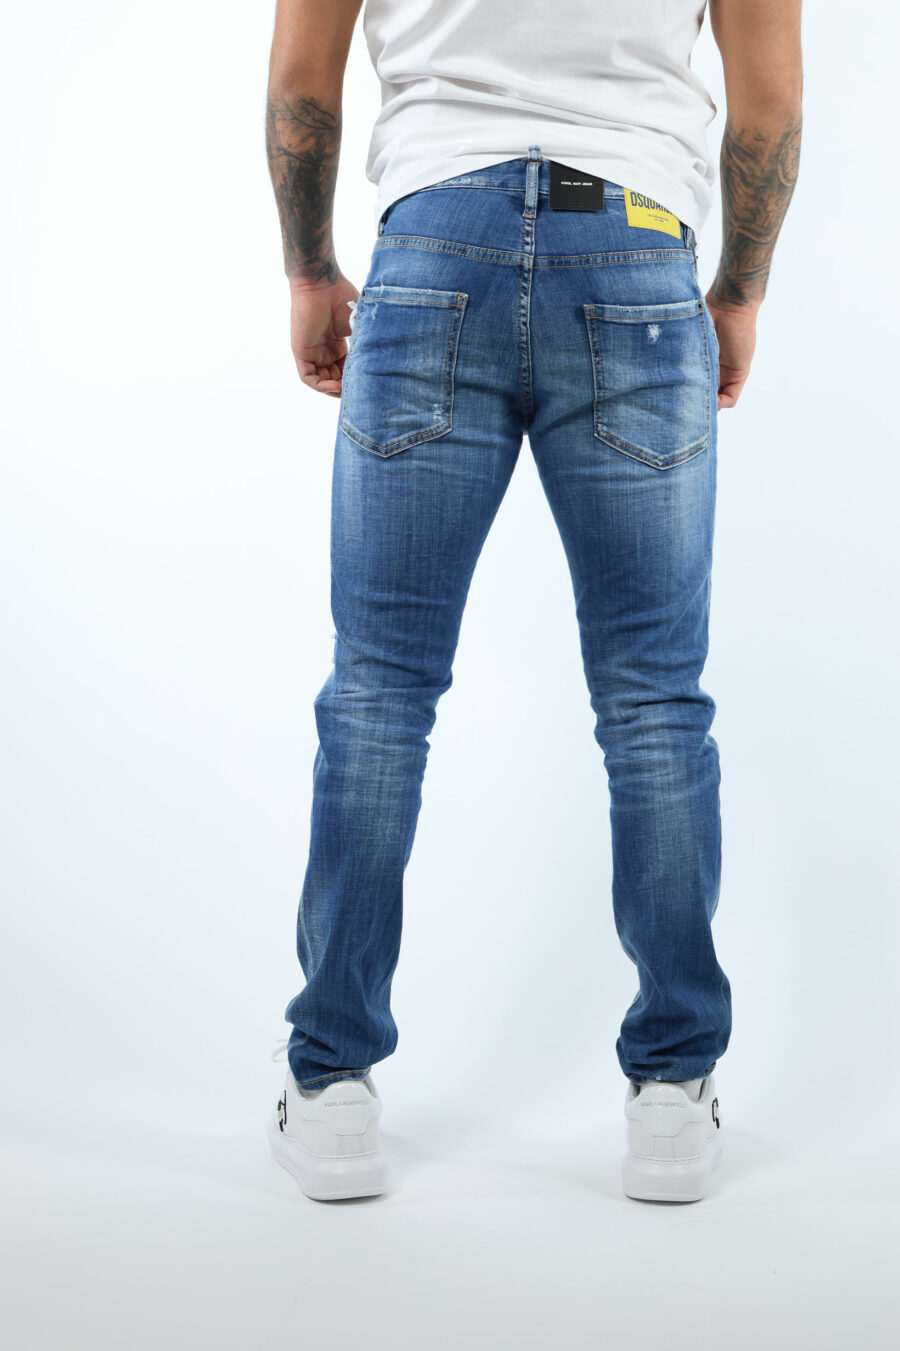 Pantalón vaquero azul claro "cool guy jean" con semirotos y semidesgastado - 8054148313456 2